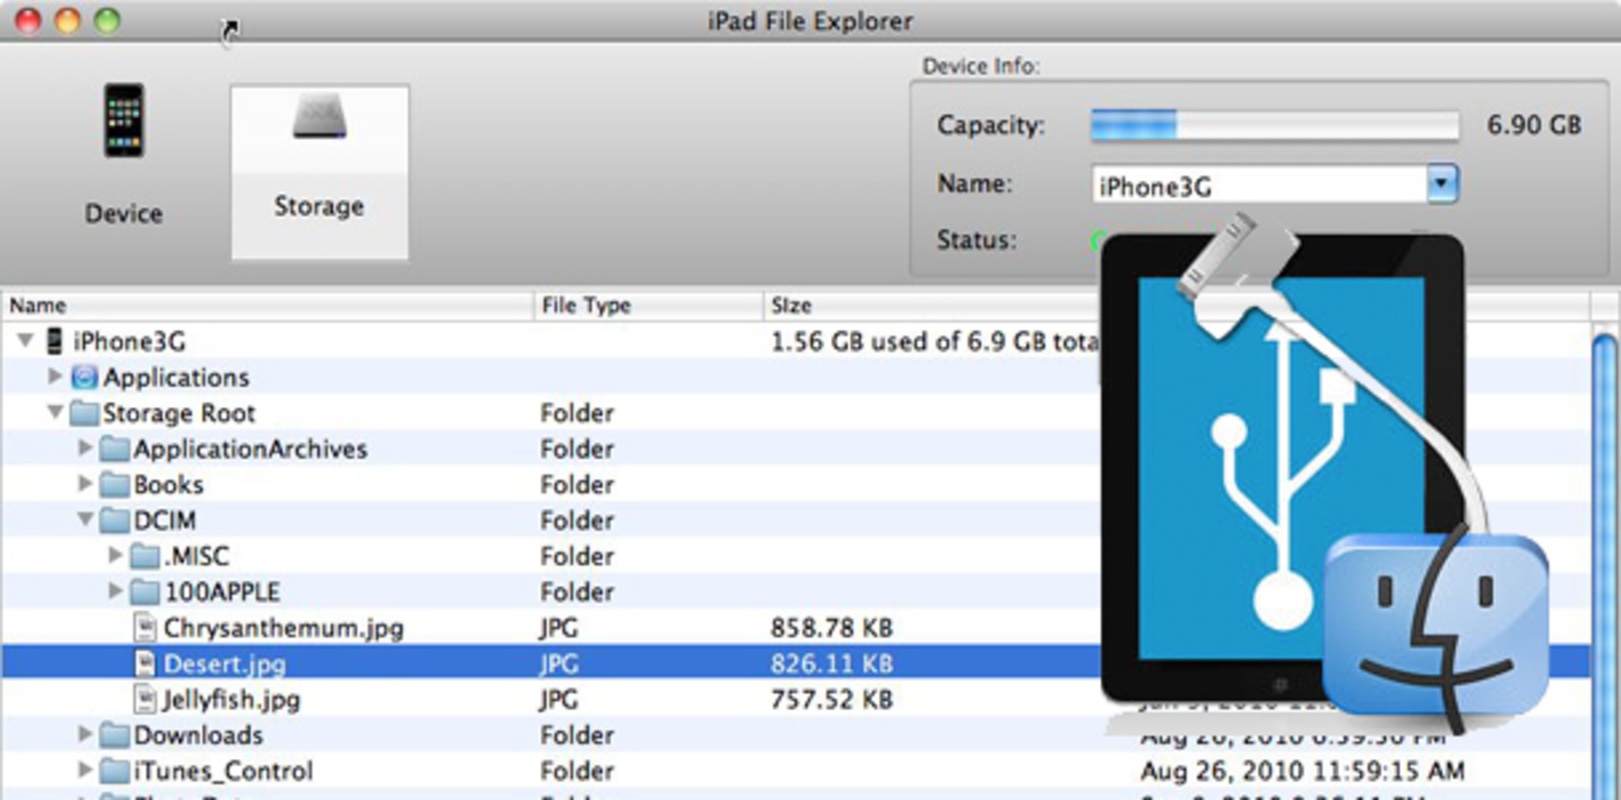 iPad File Explorer 3.20 feature